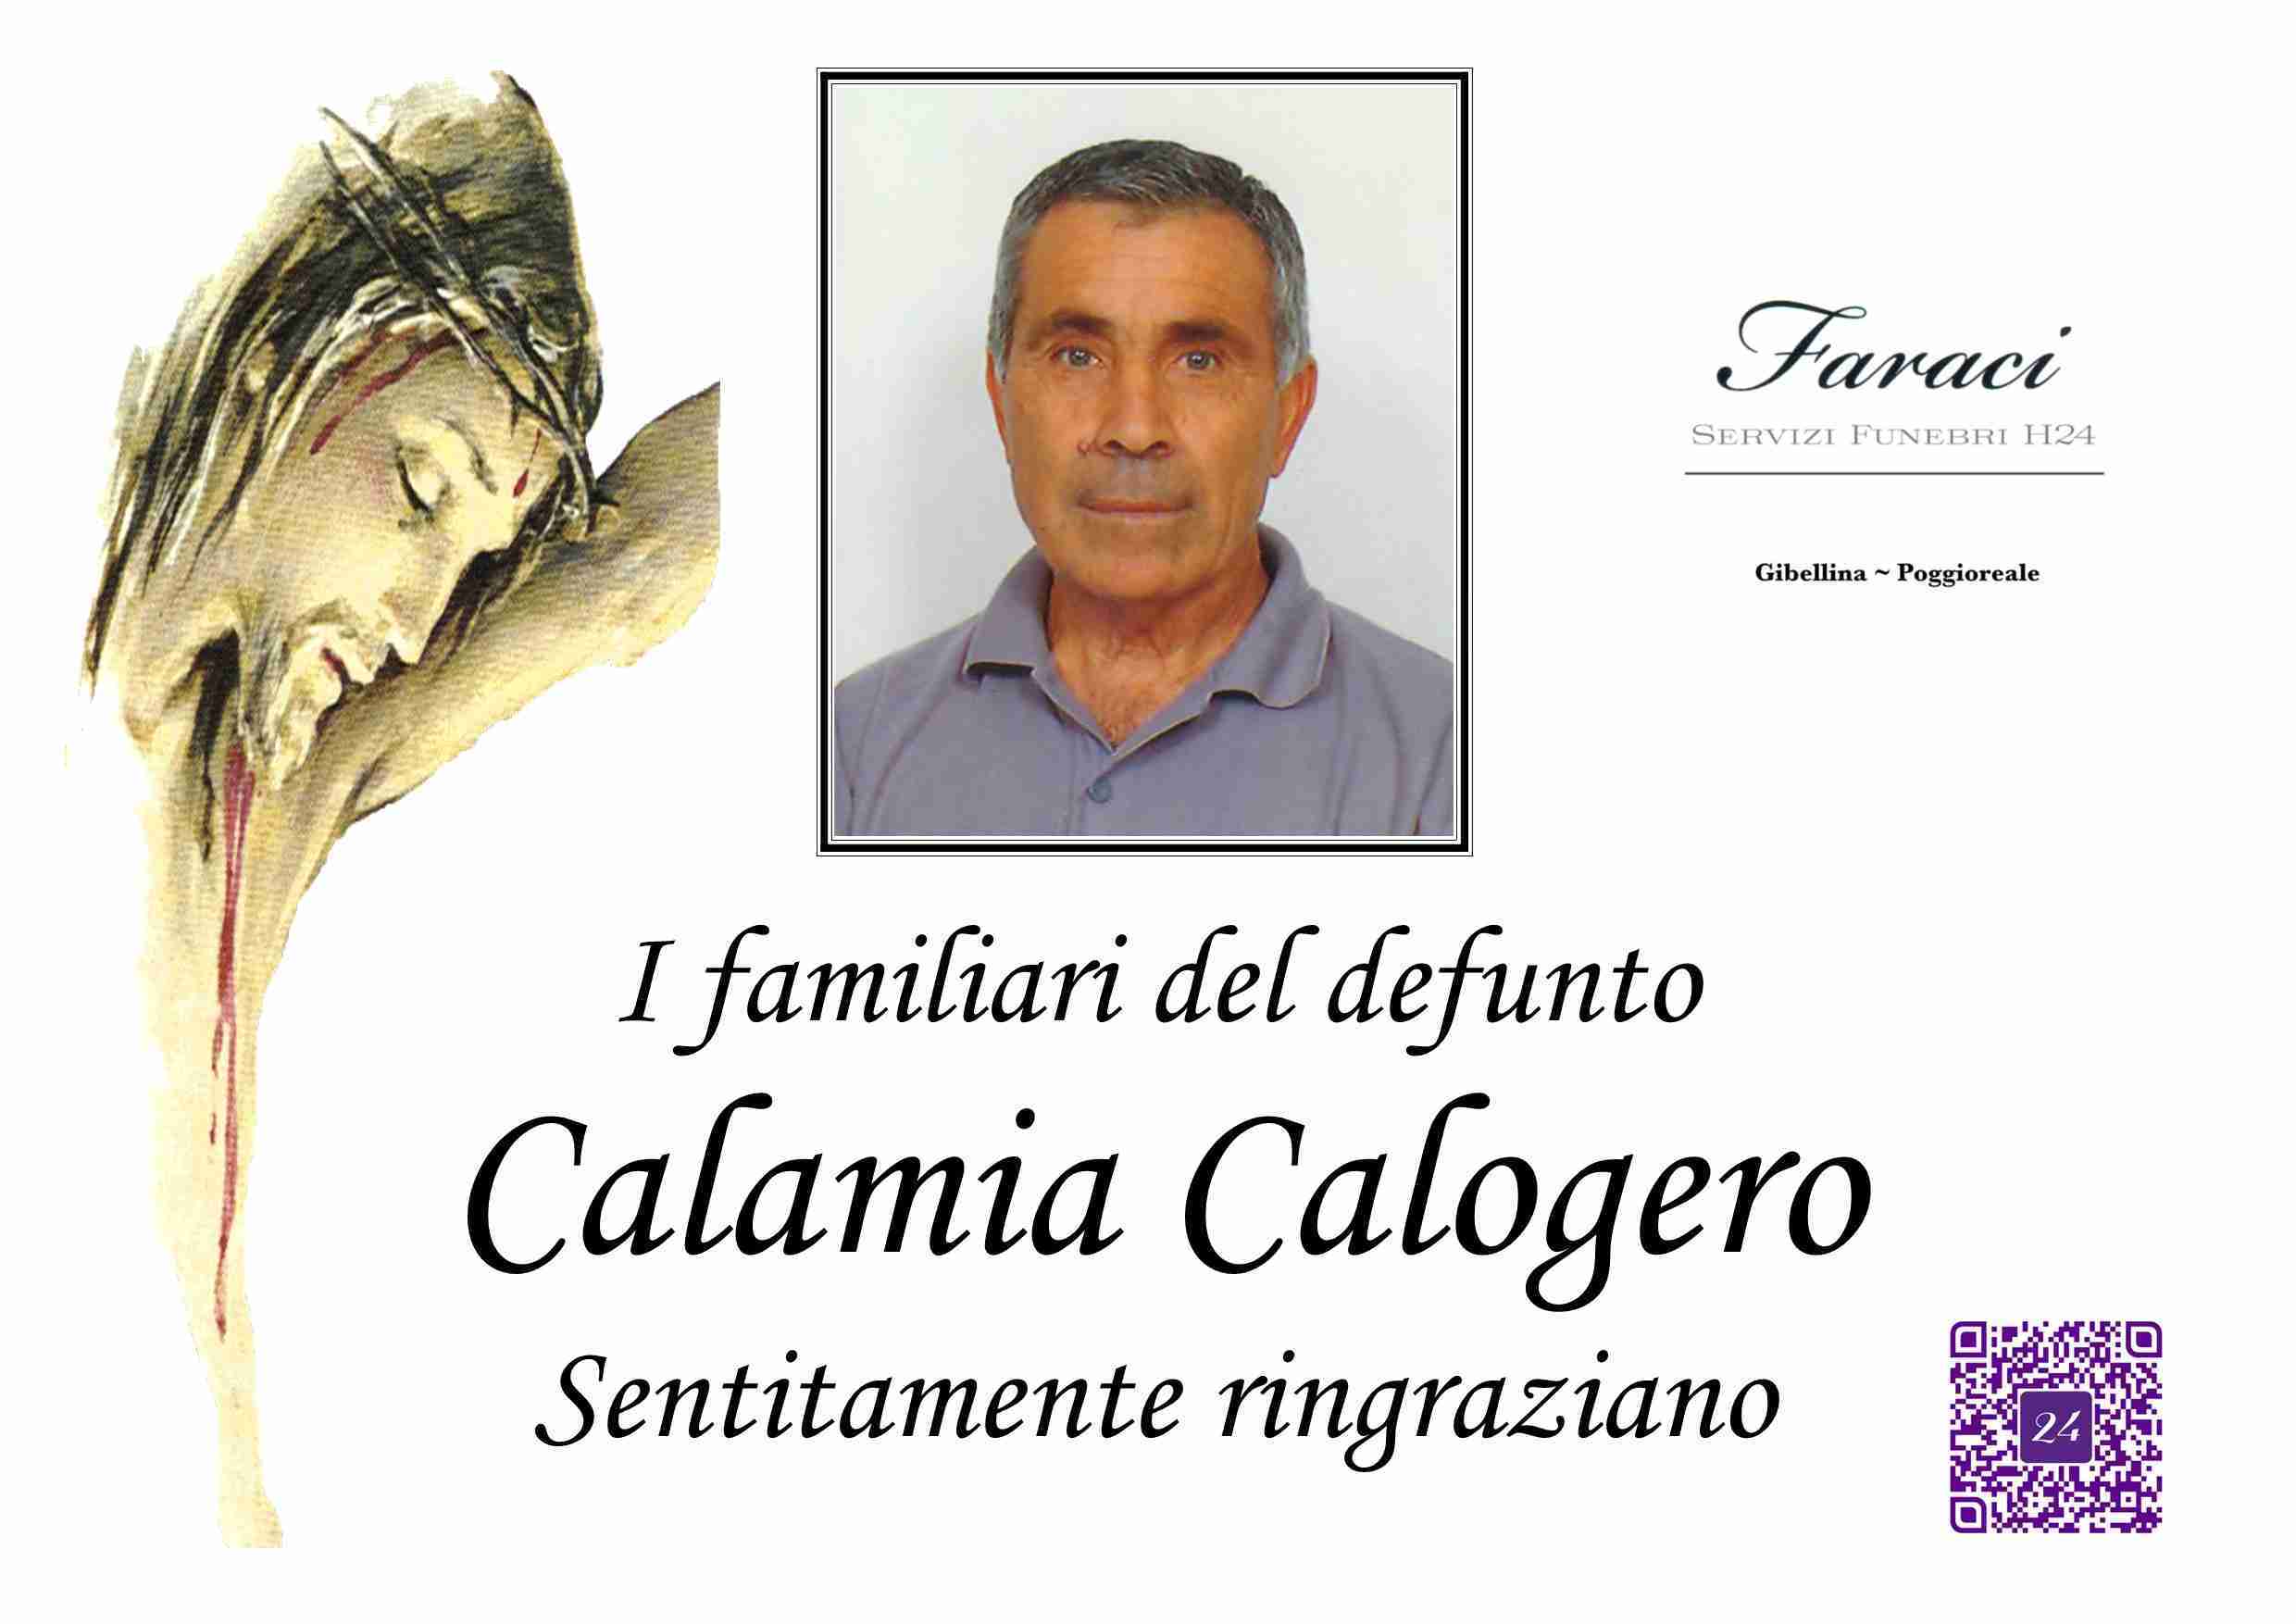 Calogero Calamia